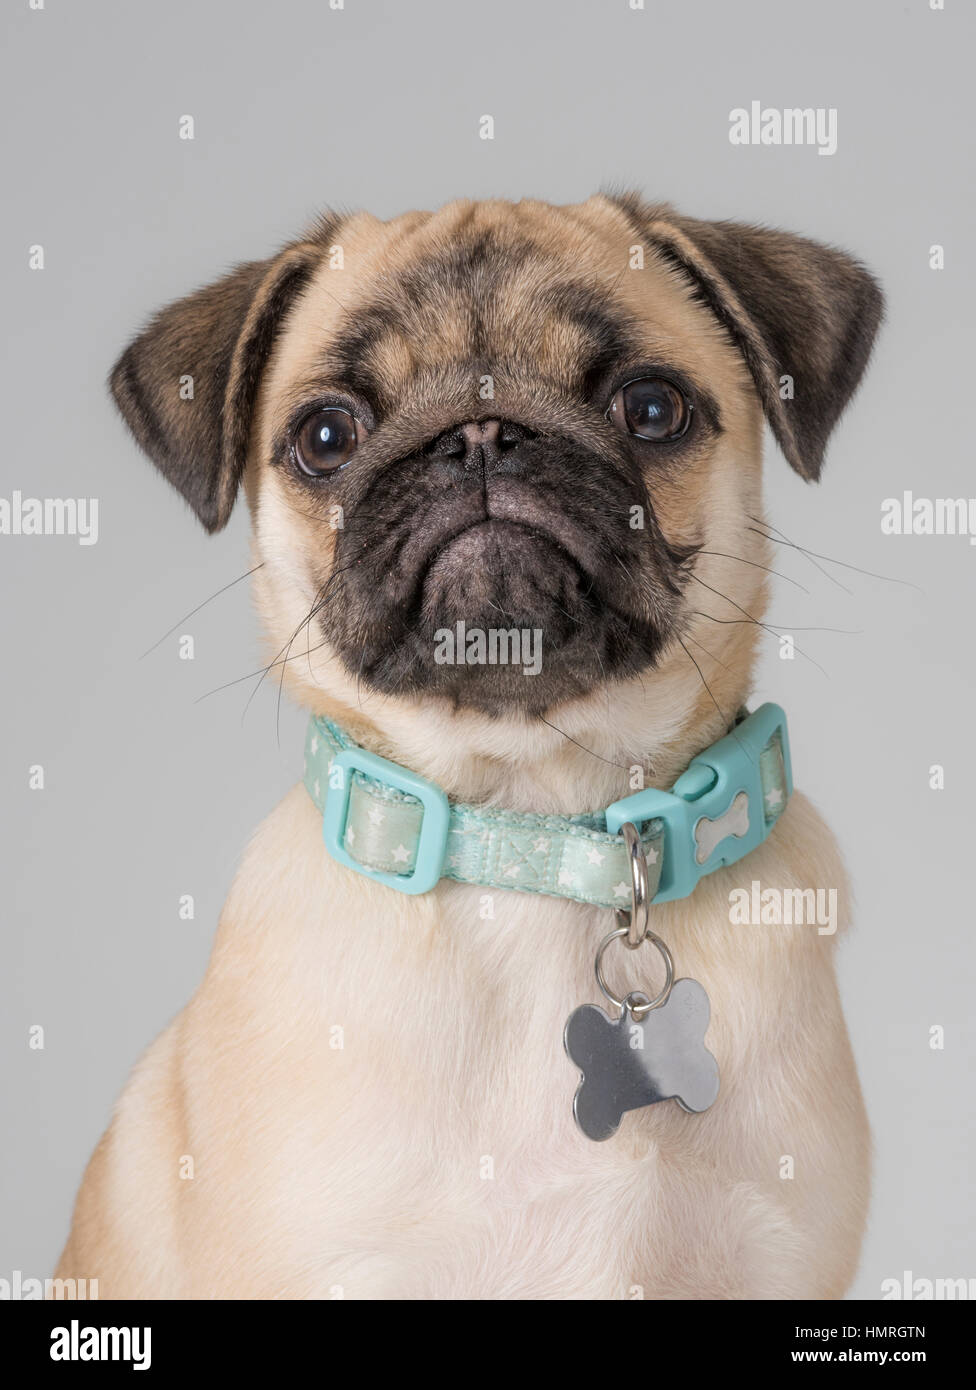 Collar De Hueso De Perro Fotos e Imágenes de stock - Alamy